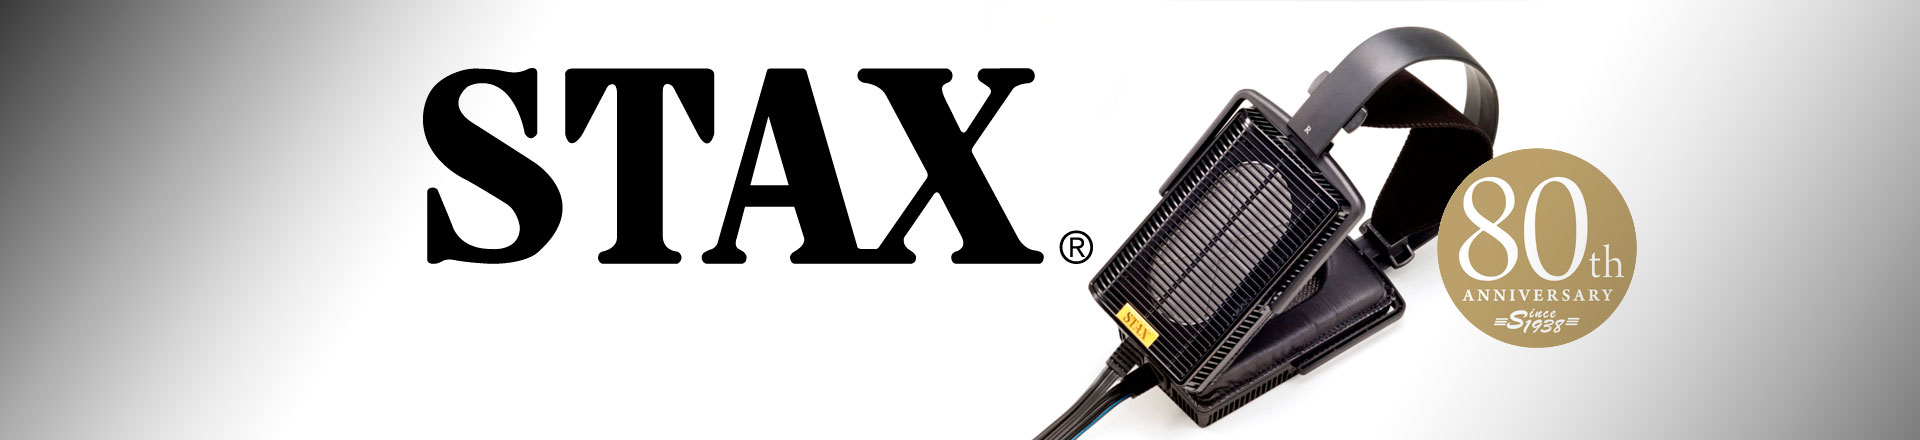 STAX - limitowane modele na 80-lecie firmy